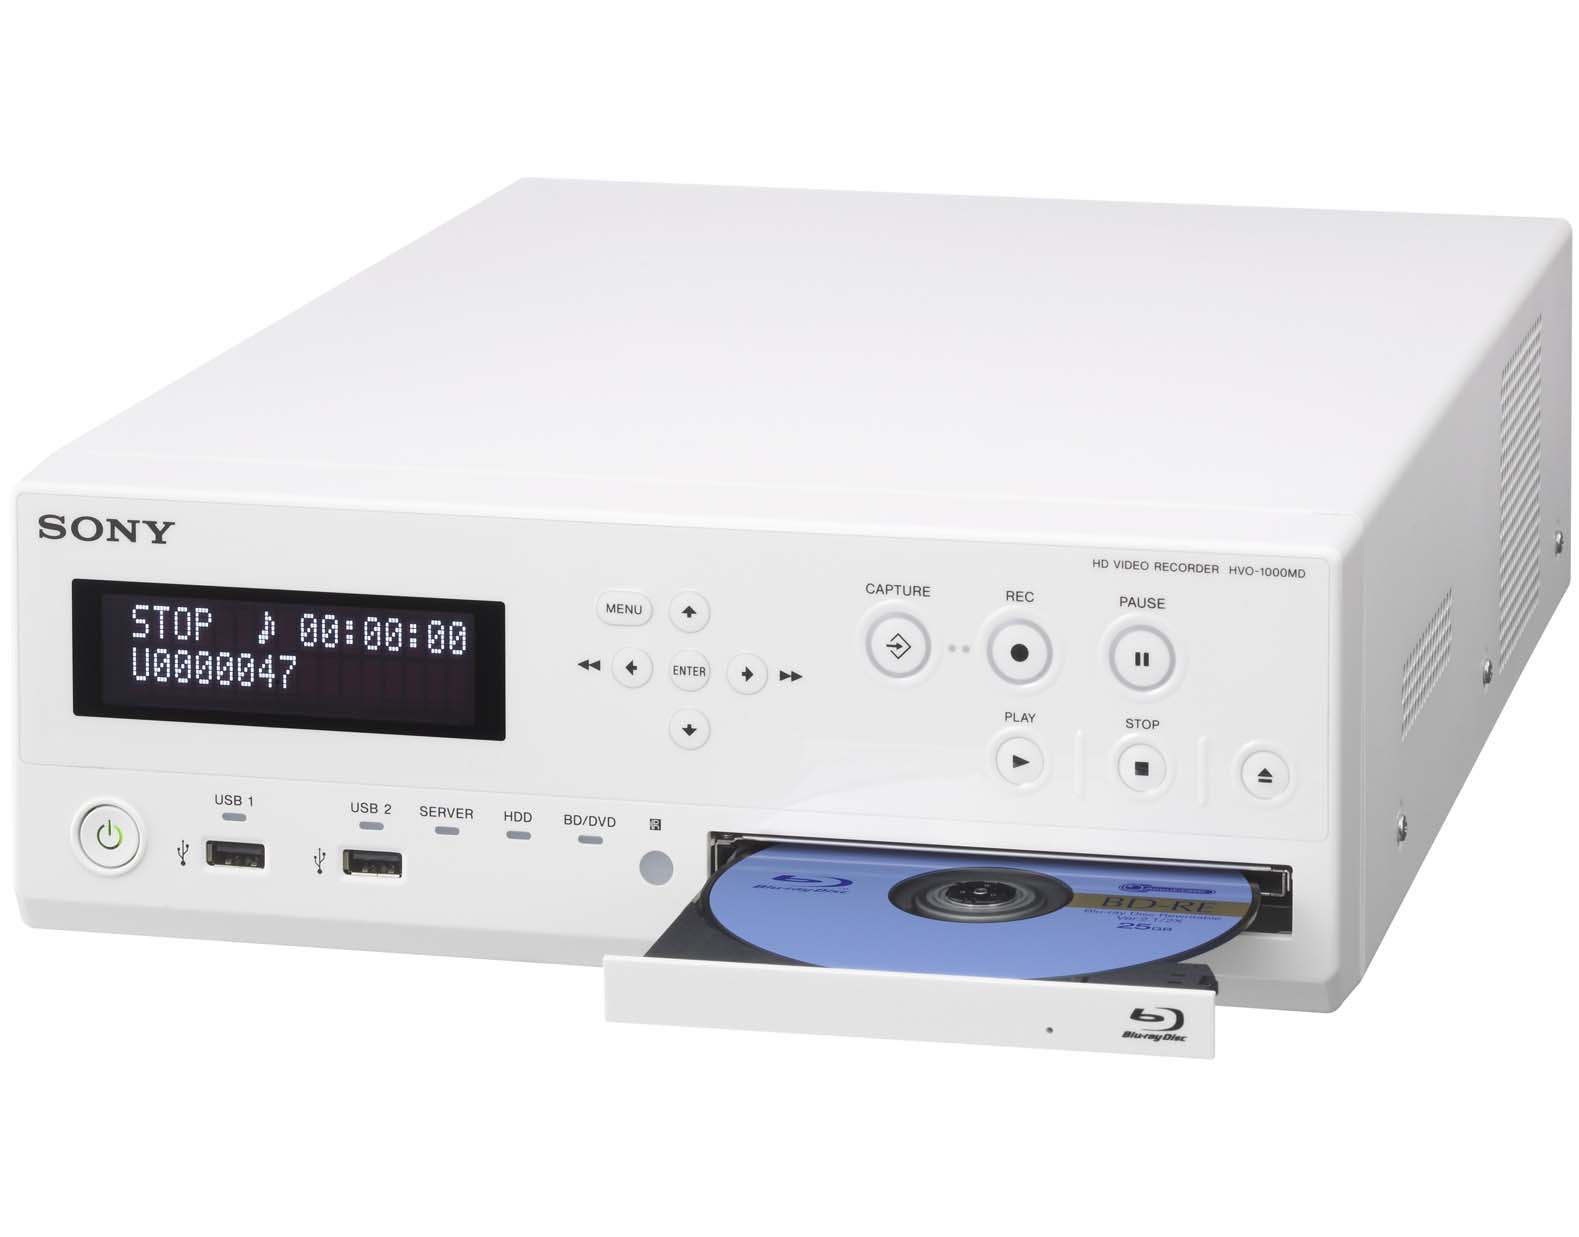 供应HVO-1000MD蓝光硬盘录像机